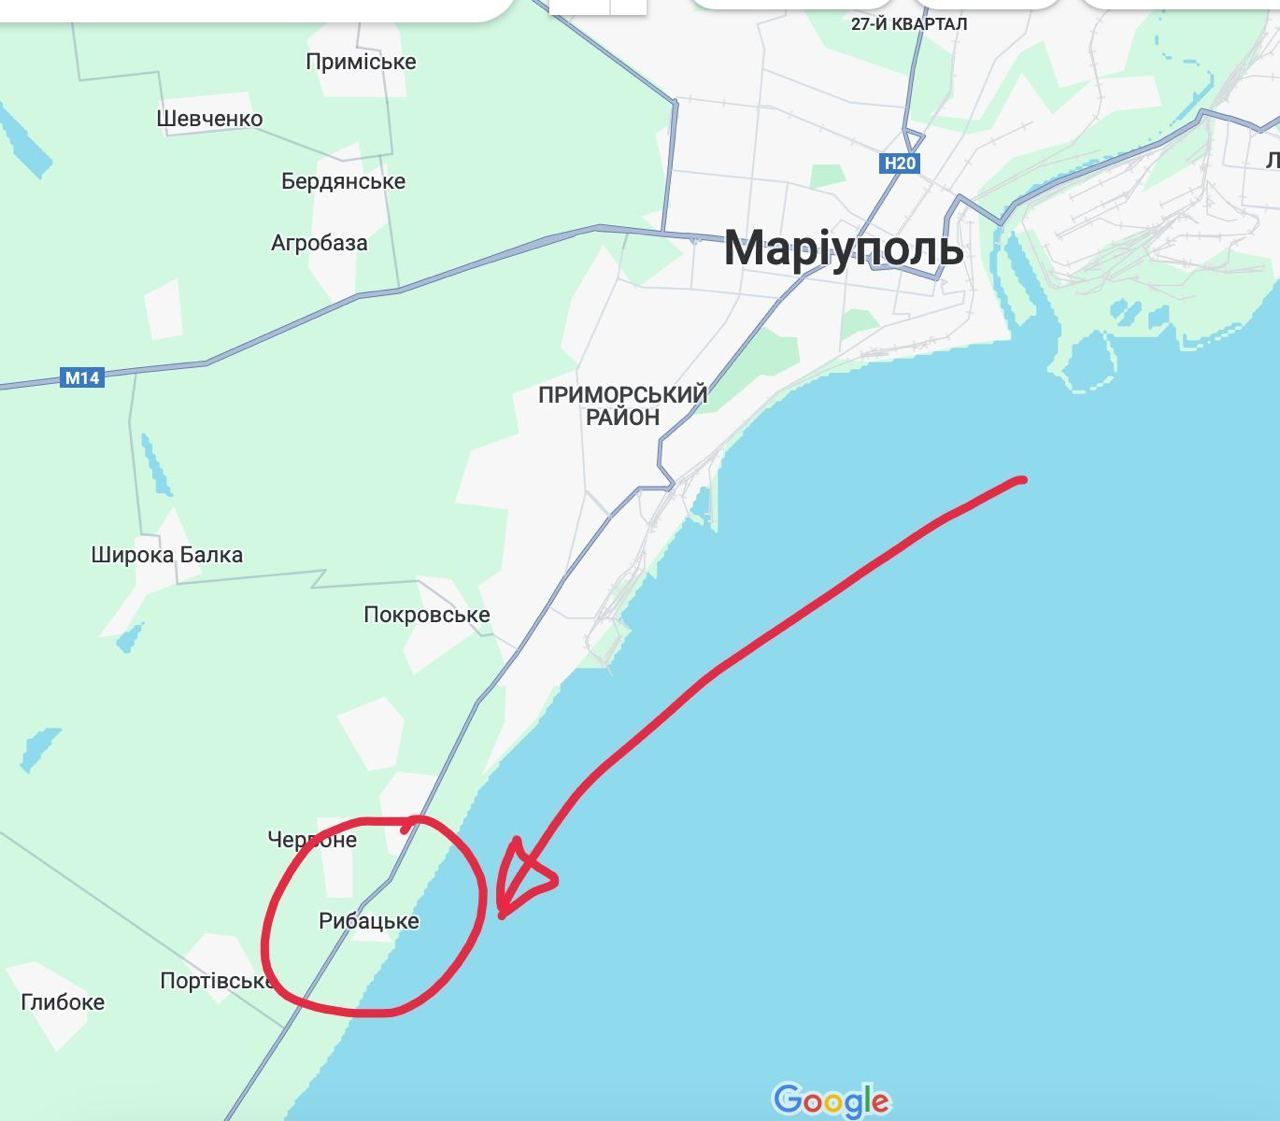 Село Рибацьке на мапі, де міг впасти збитий літак / © 